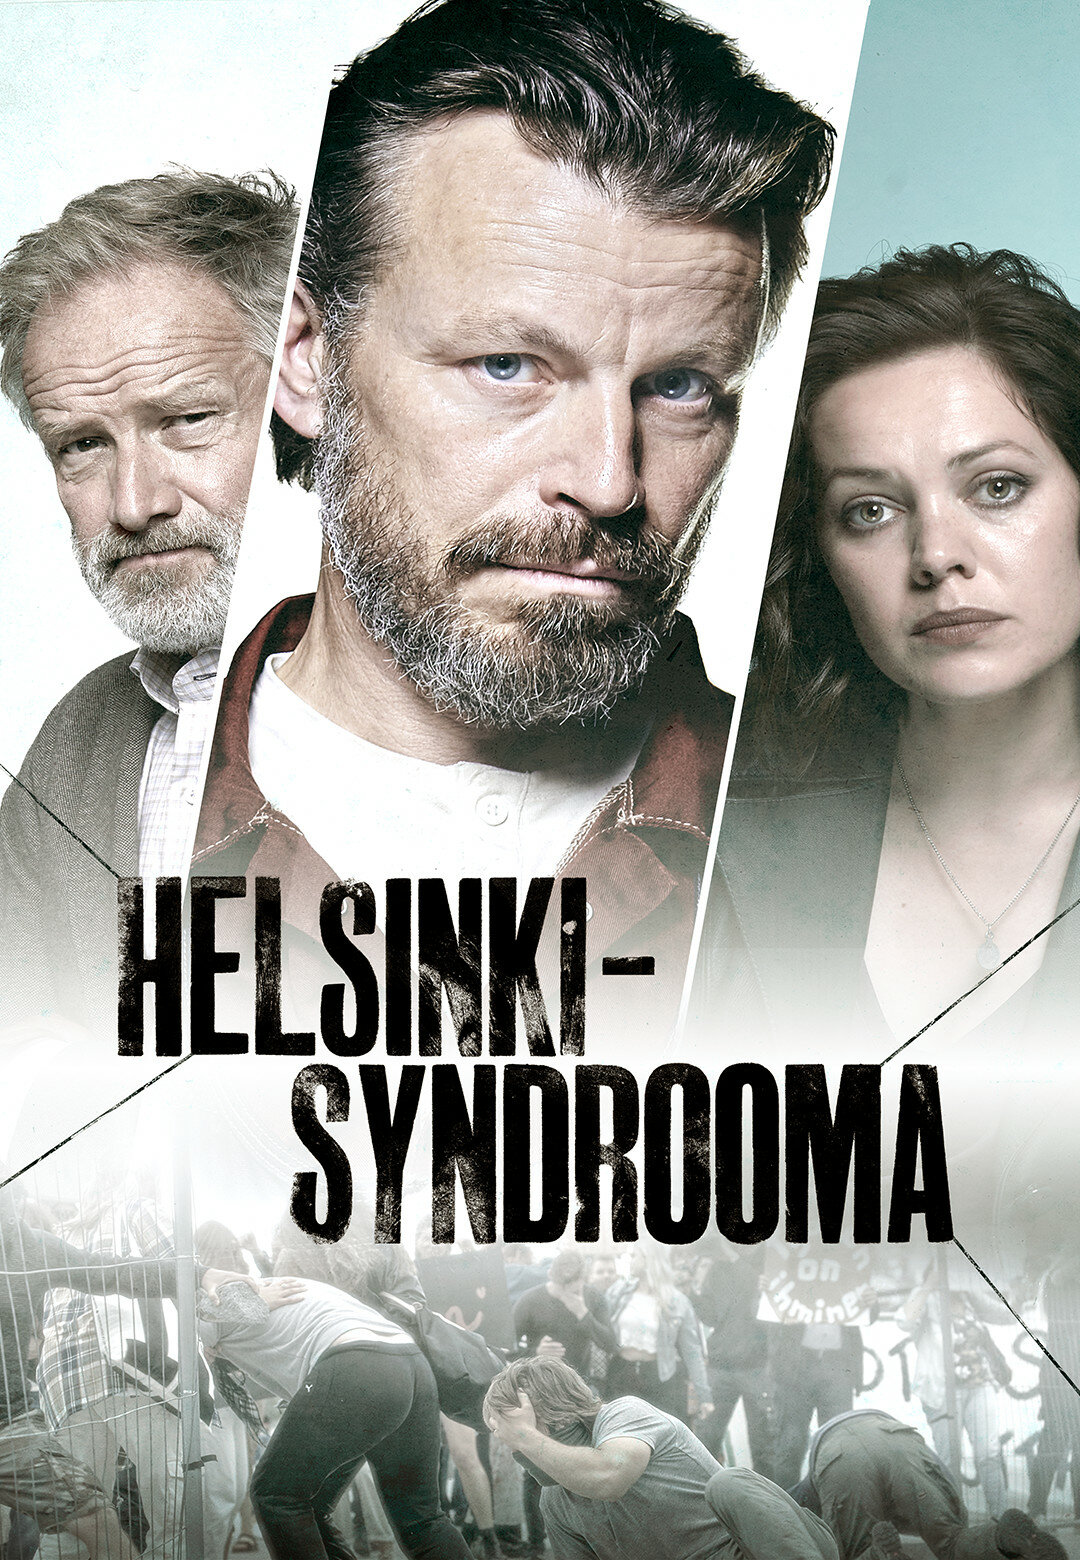 Helsinki-syndrooma ne zaman